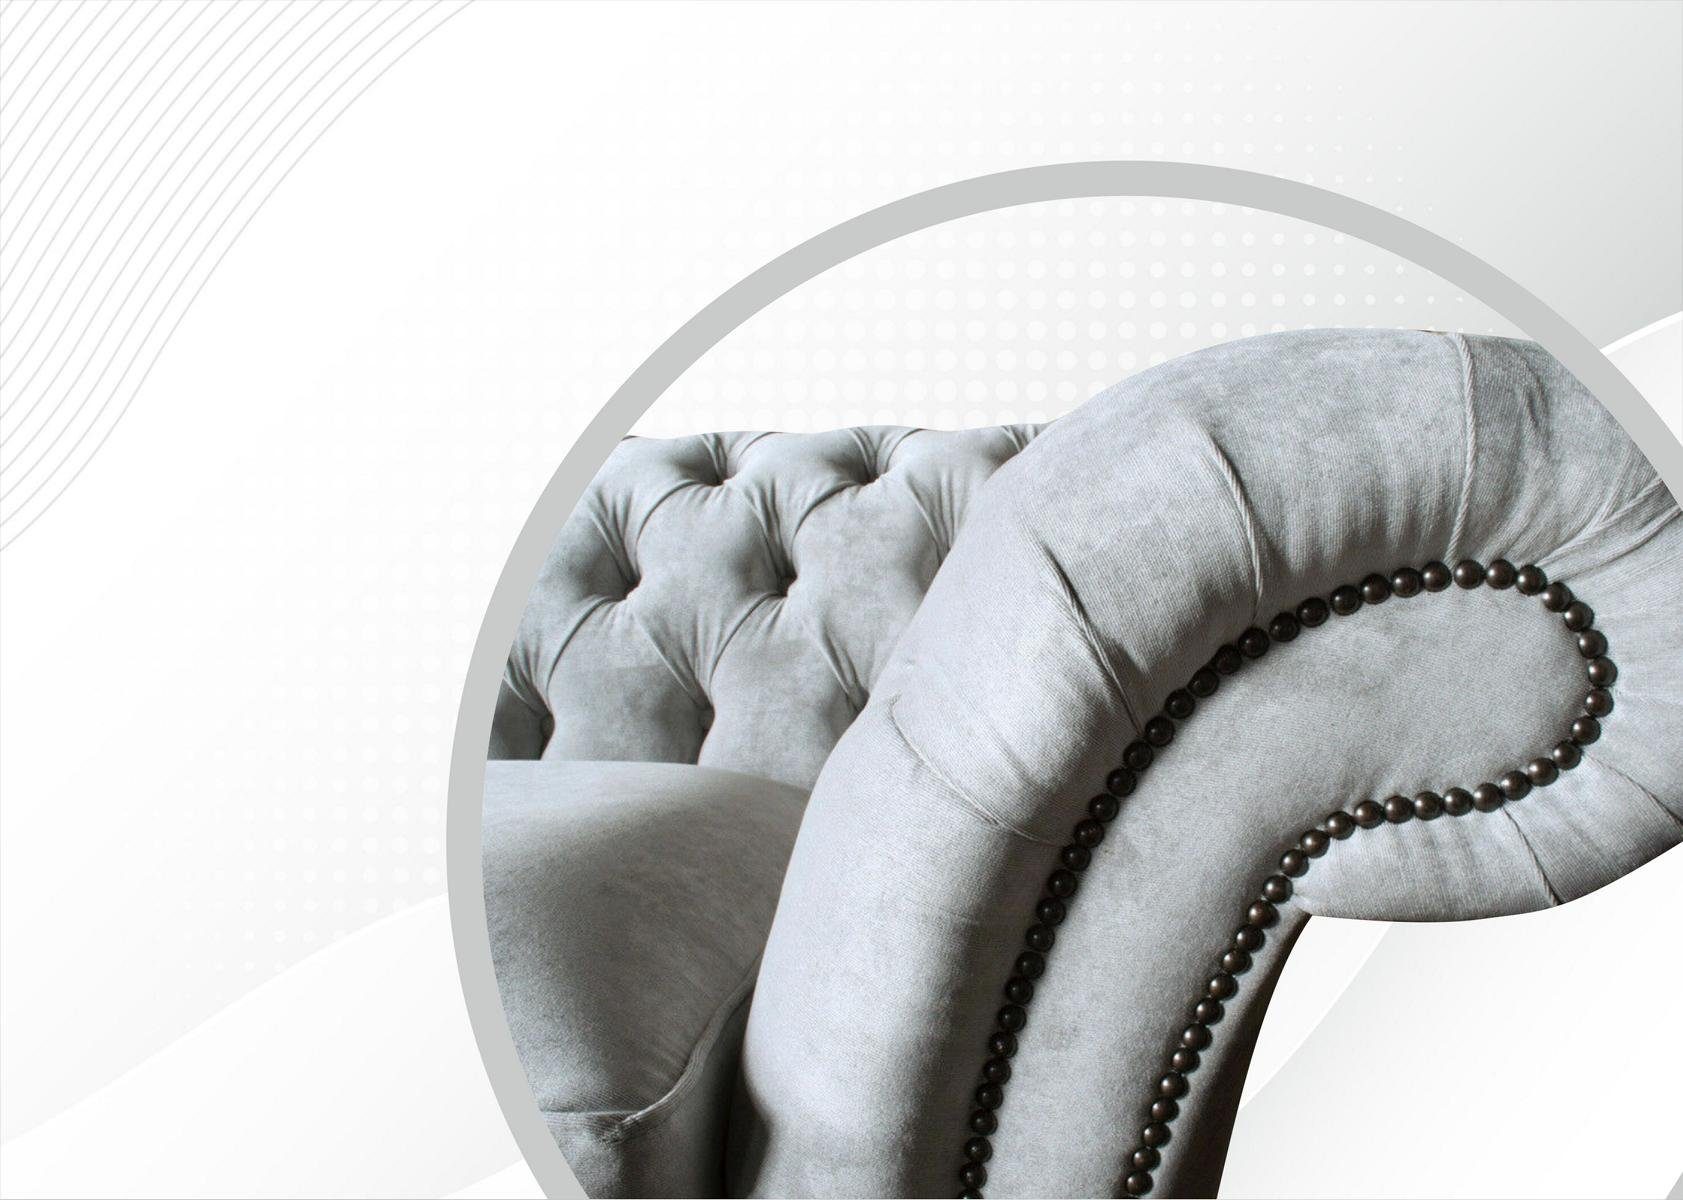 Chesterfield-Sofa, 4 JVmoebel Stoff Sofa Polster Couchen Design Sofas Couch Sitzer Wohnzimmer